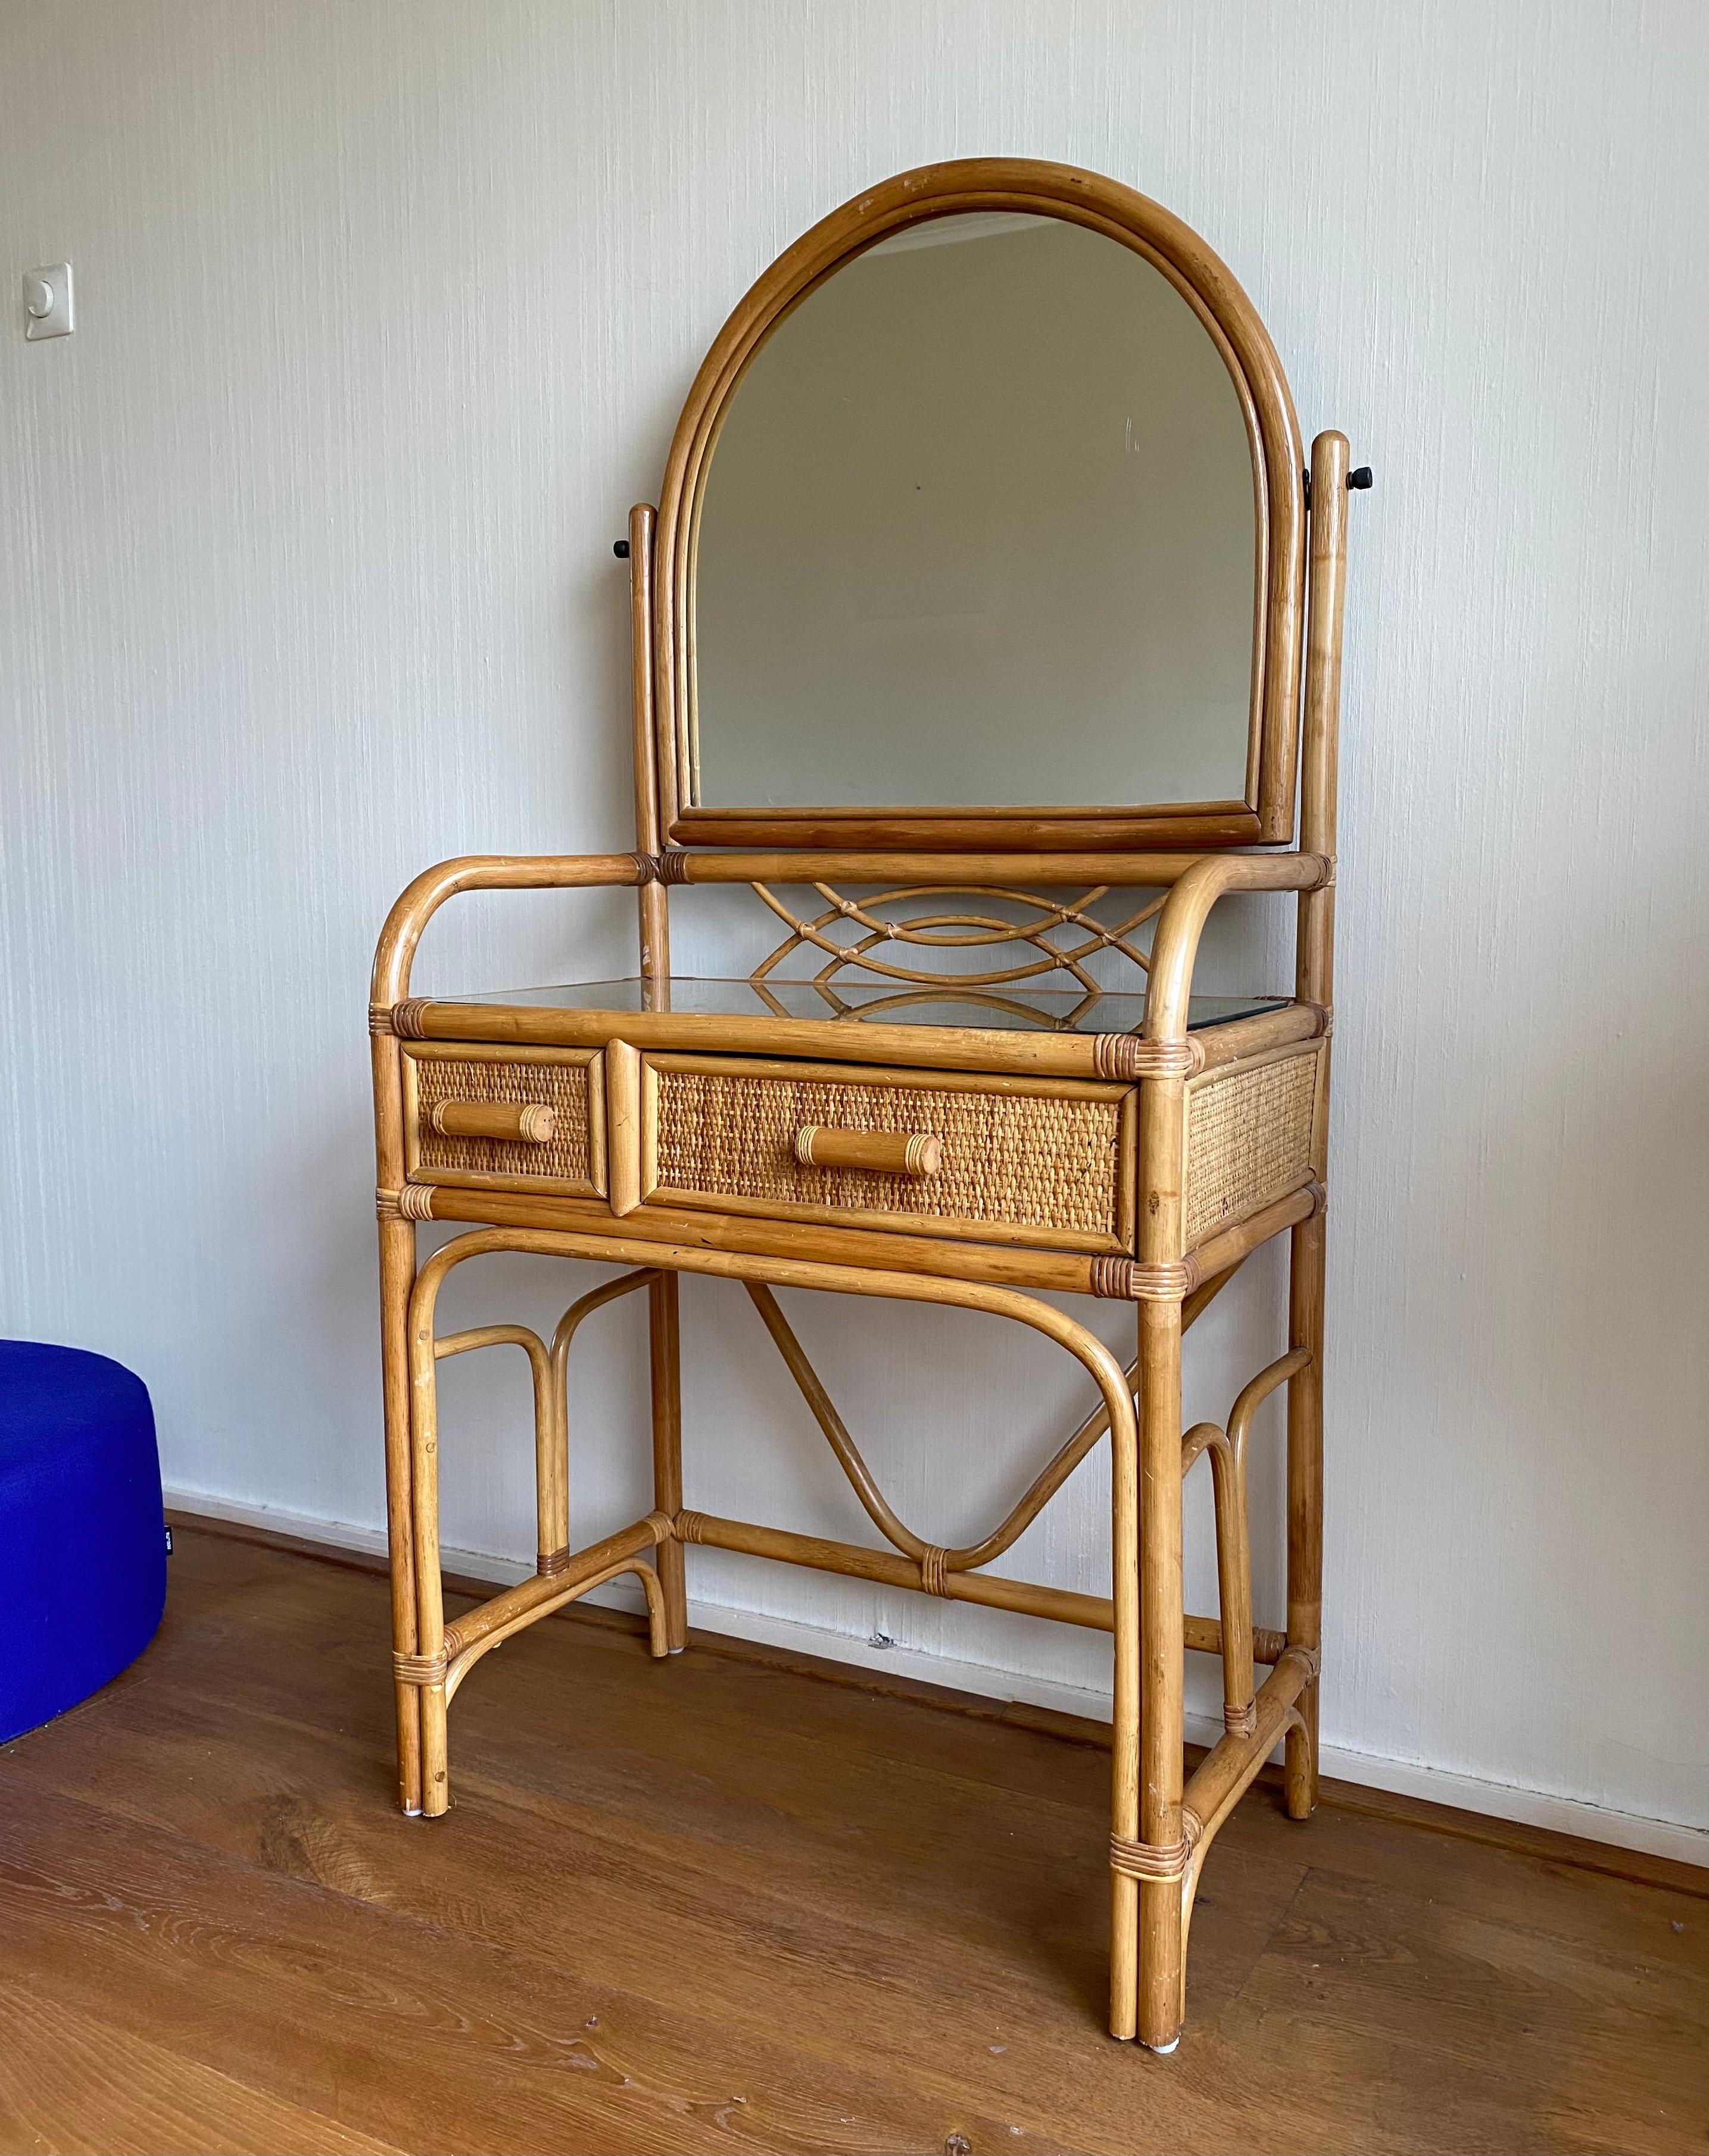 Superbe vanity set en rotin de la fin du 20e siècle, composé d'une table avec tiroir et miroir et d'un tabouret. Cet ensemble européen s'intègre parfaitement dans une maison de style mi-siècle ou bohème. De plus, certaines petites princesses